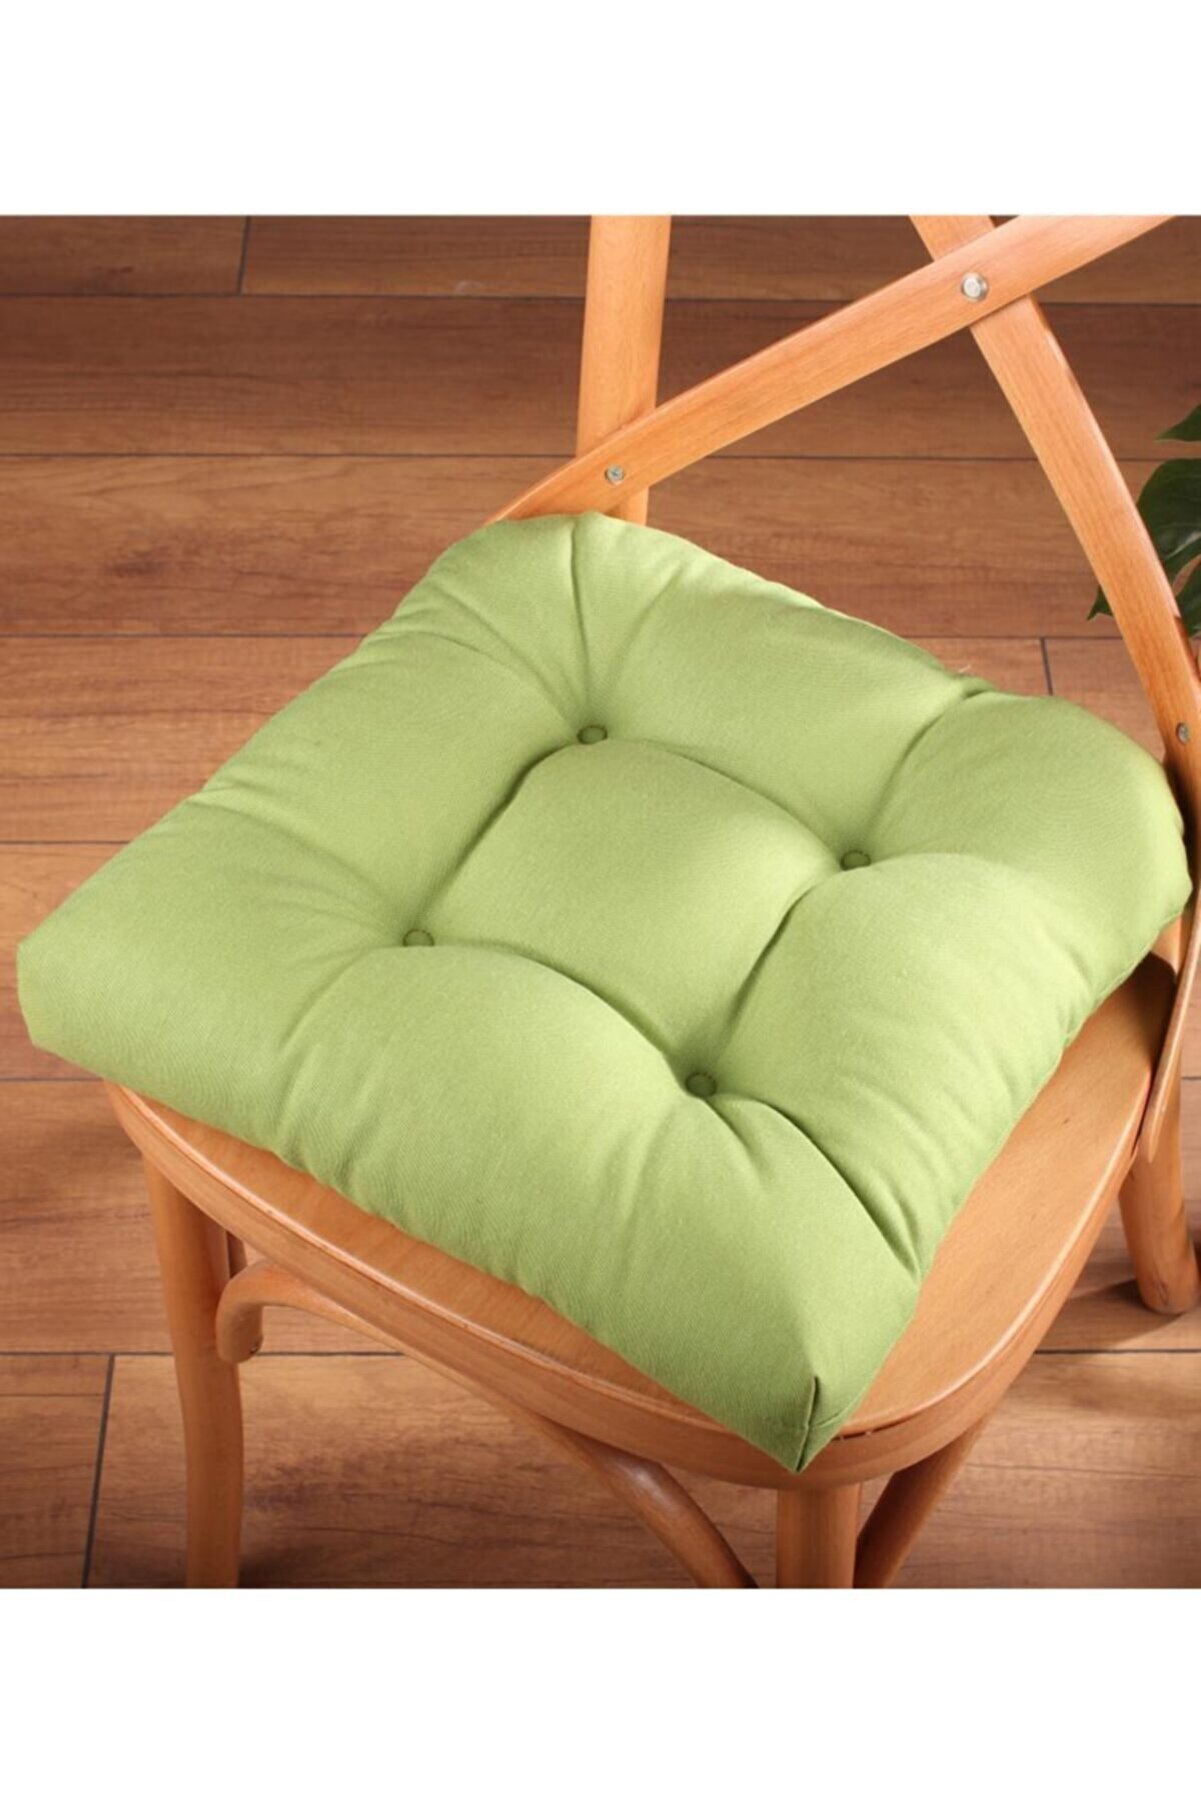 ALTINPAMUK Gold Pofidik Yeşil Sandalye Minderi Özel Dikişli Bağcıklı 40x40cm